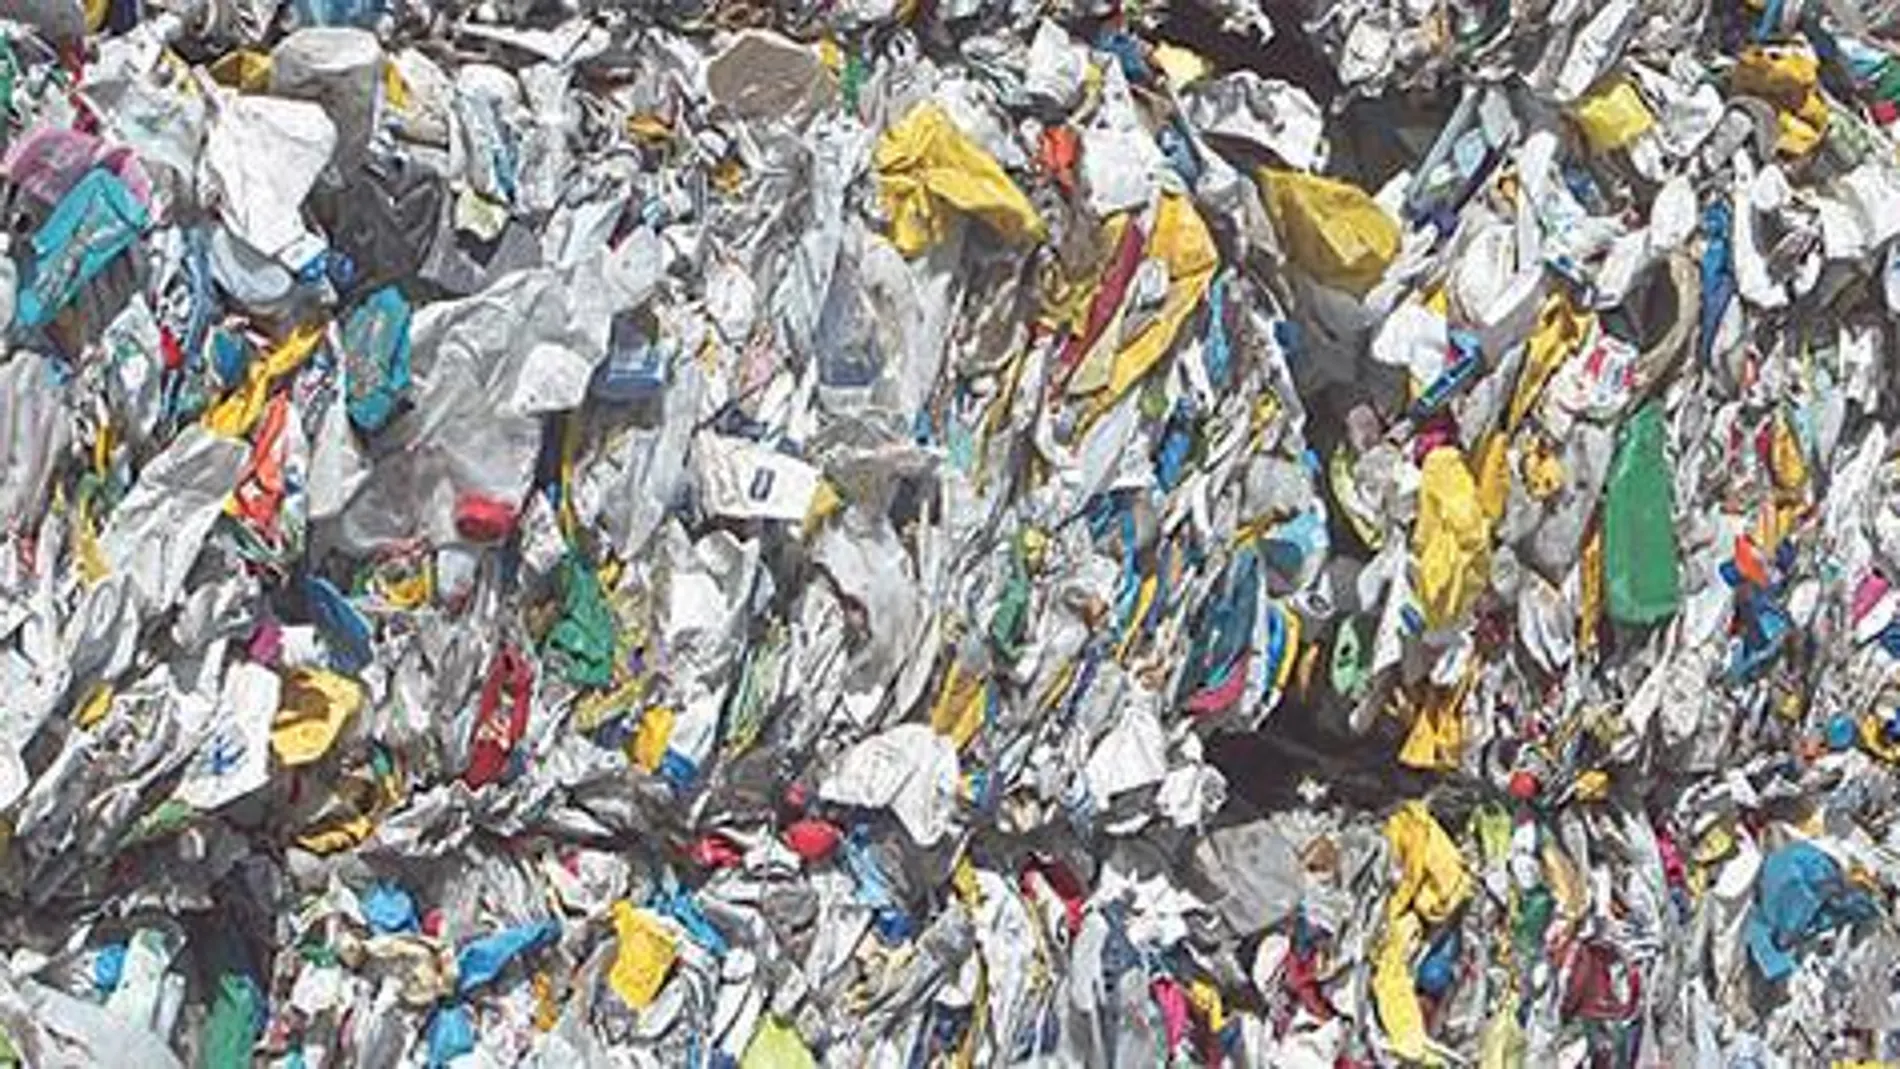 Más de 200.000 toneladas de residuos se tiraron a vertederos sin tratar previamente